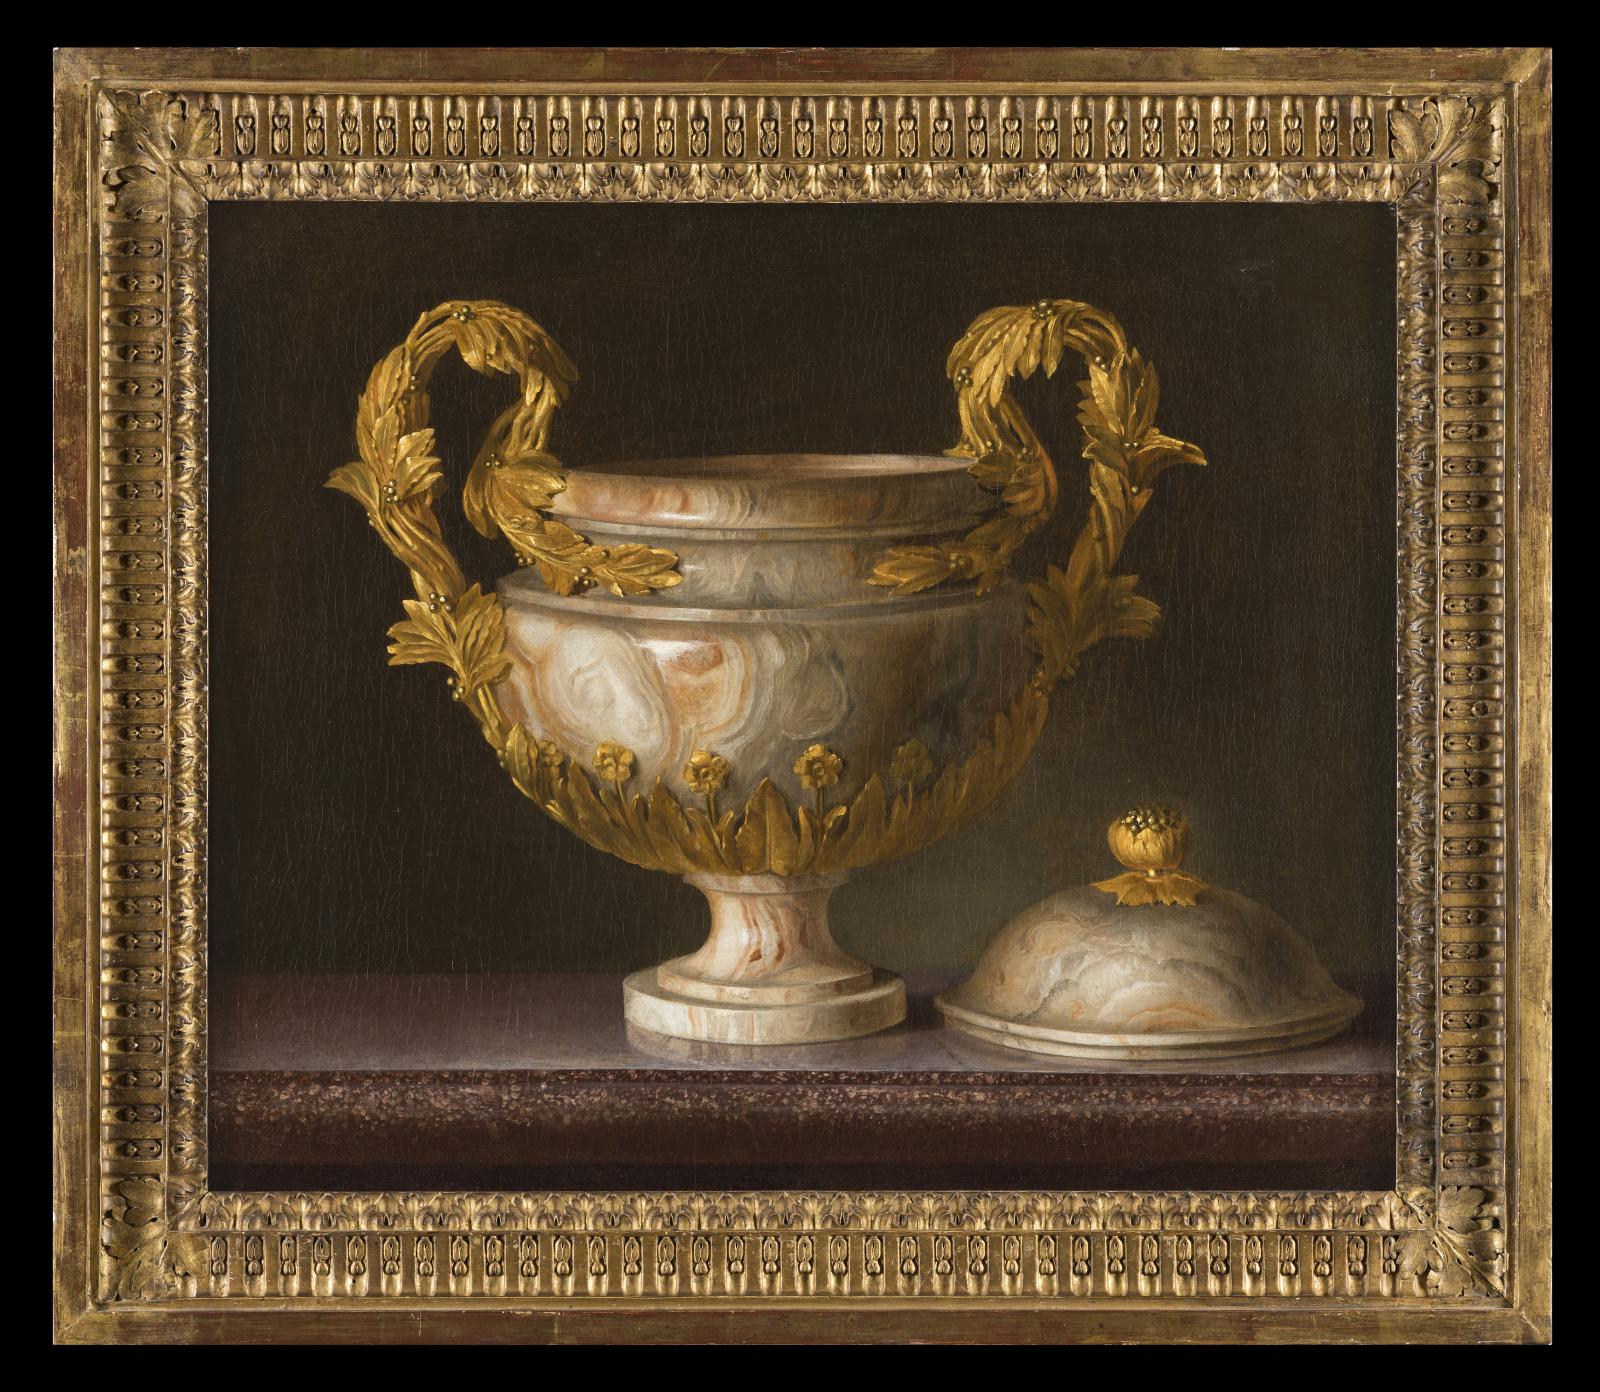 Anonyme, Nature morte au vase d’albâtre, huile sur toile, collection particulière.